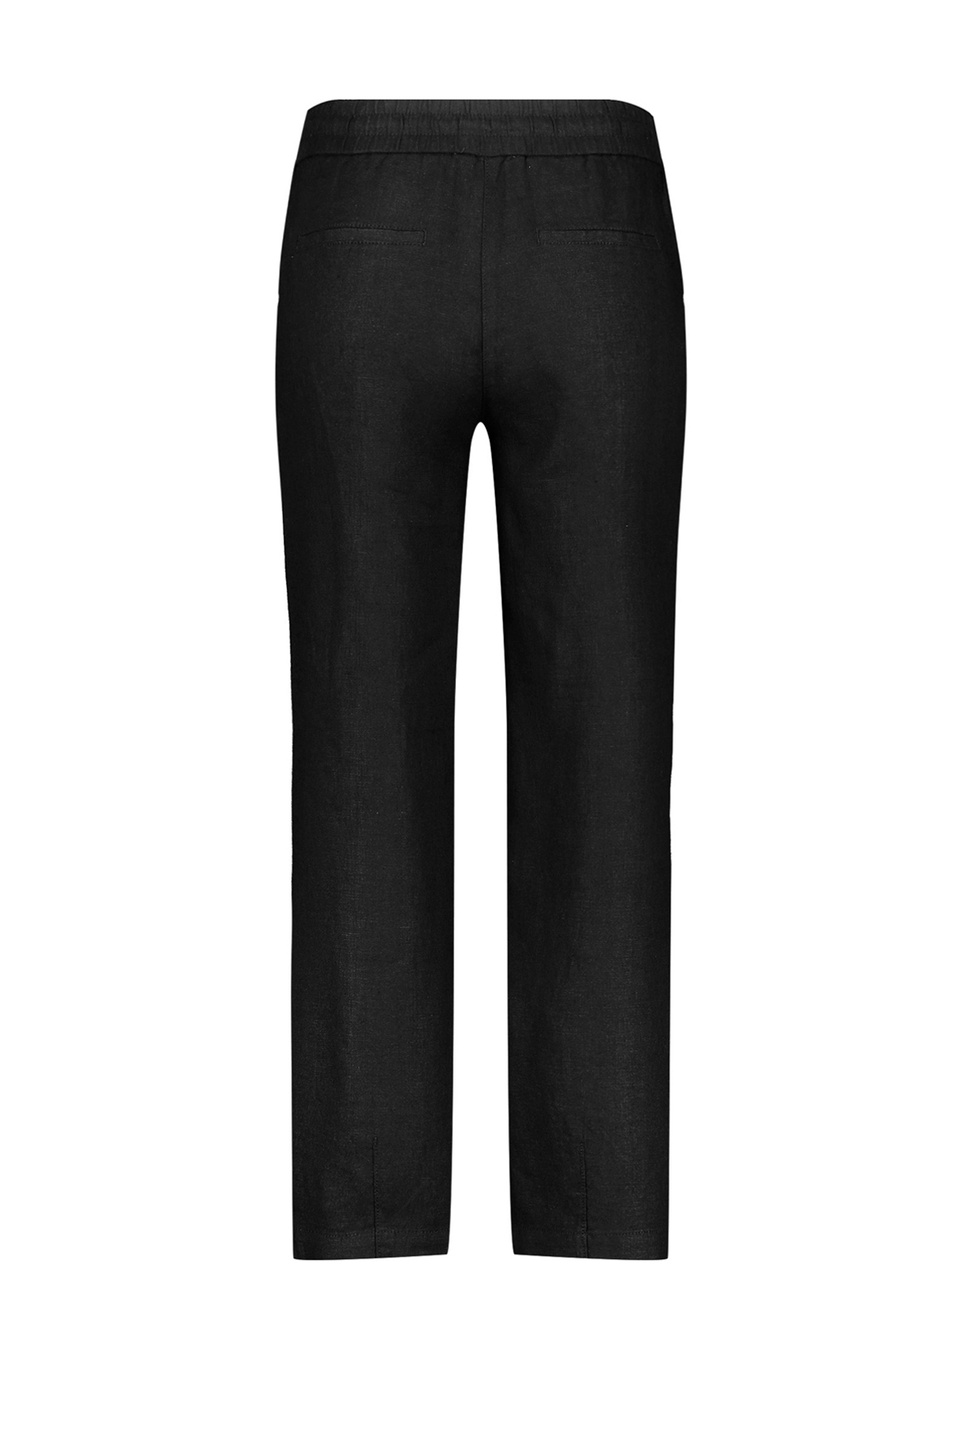 Gerry Weber Однотонные брюки из чистого льна (цвет ), артикул 622083-66225 -Easy Fit | Фото 2